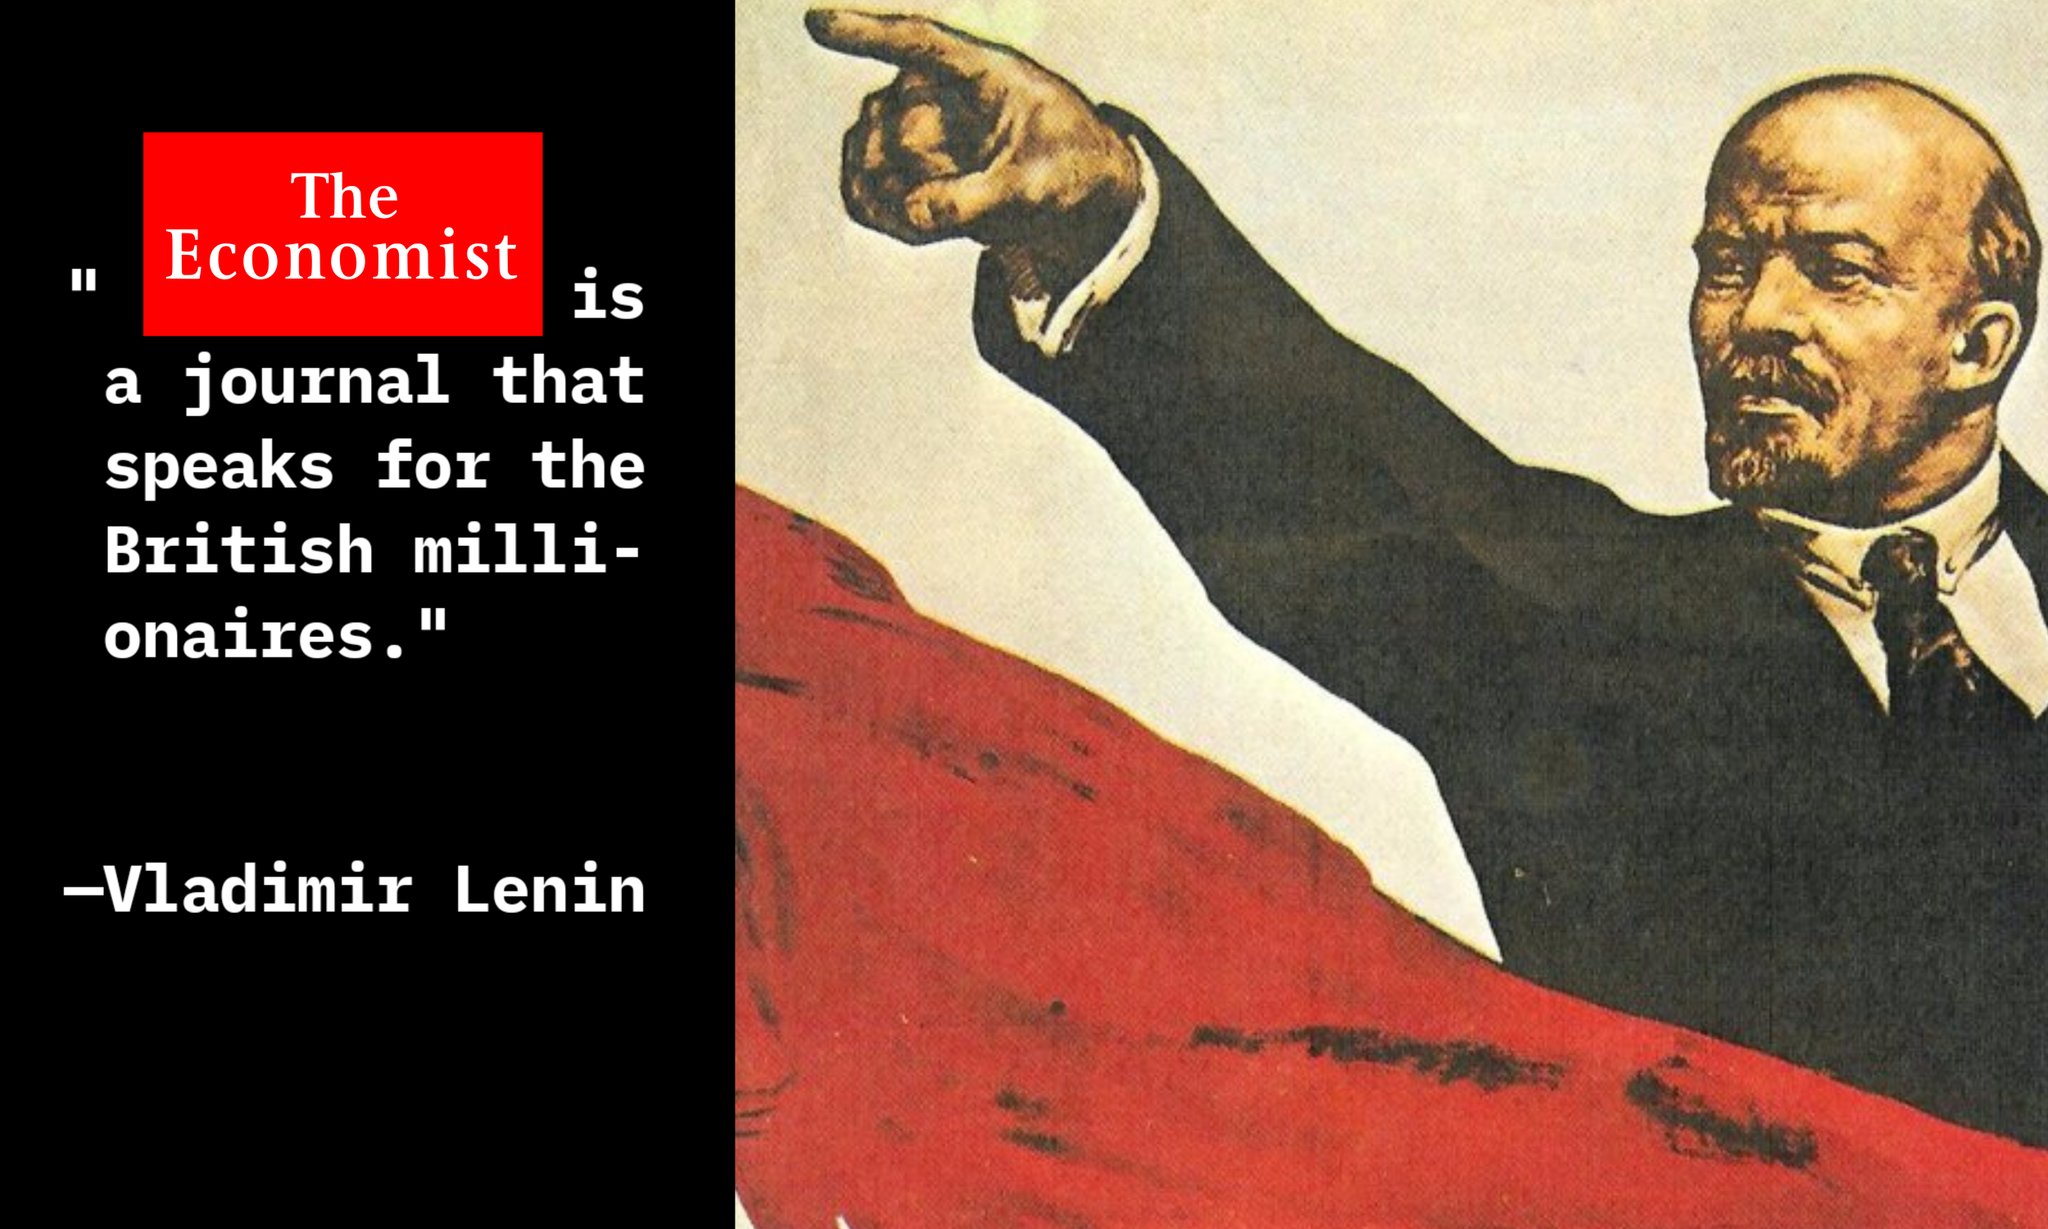 The Economist is a journal that speaks for the British millionaires. -Vladimir Lenin